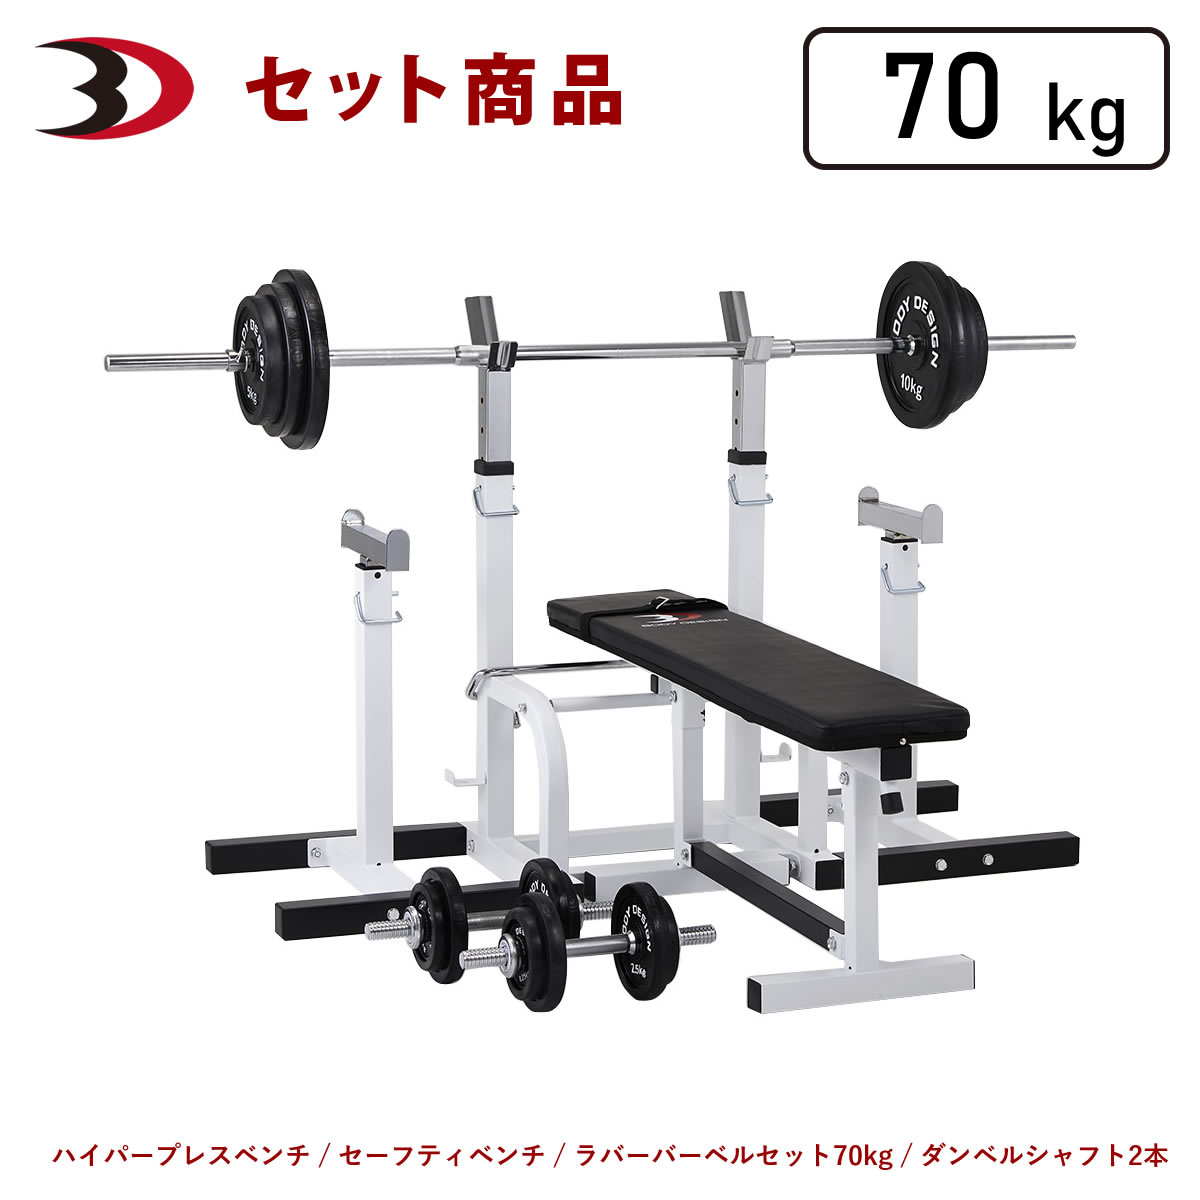 ボディデザイン セーフティパックII/ラバーバーベルセット 70kg トレーニングベンチの商品画像